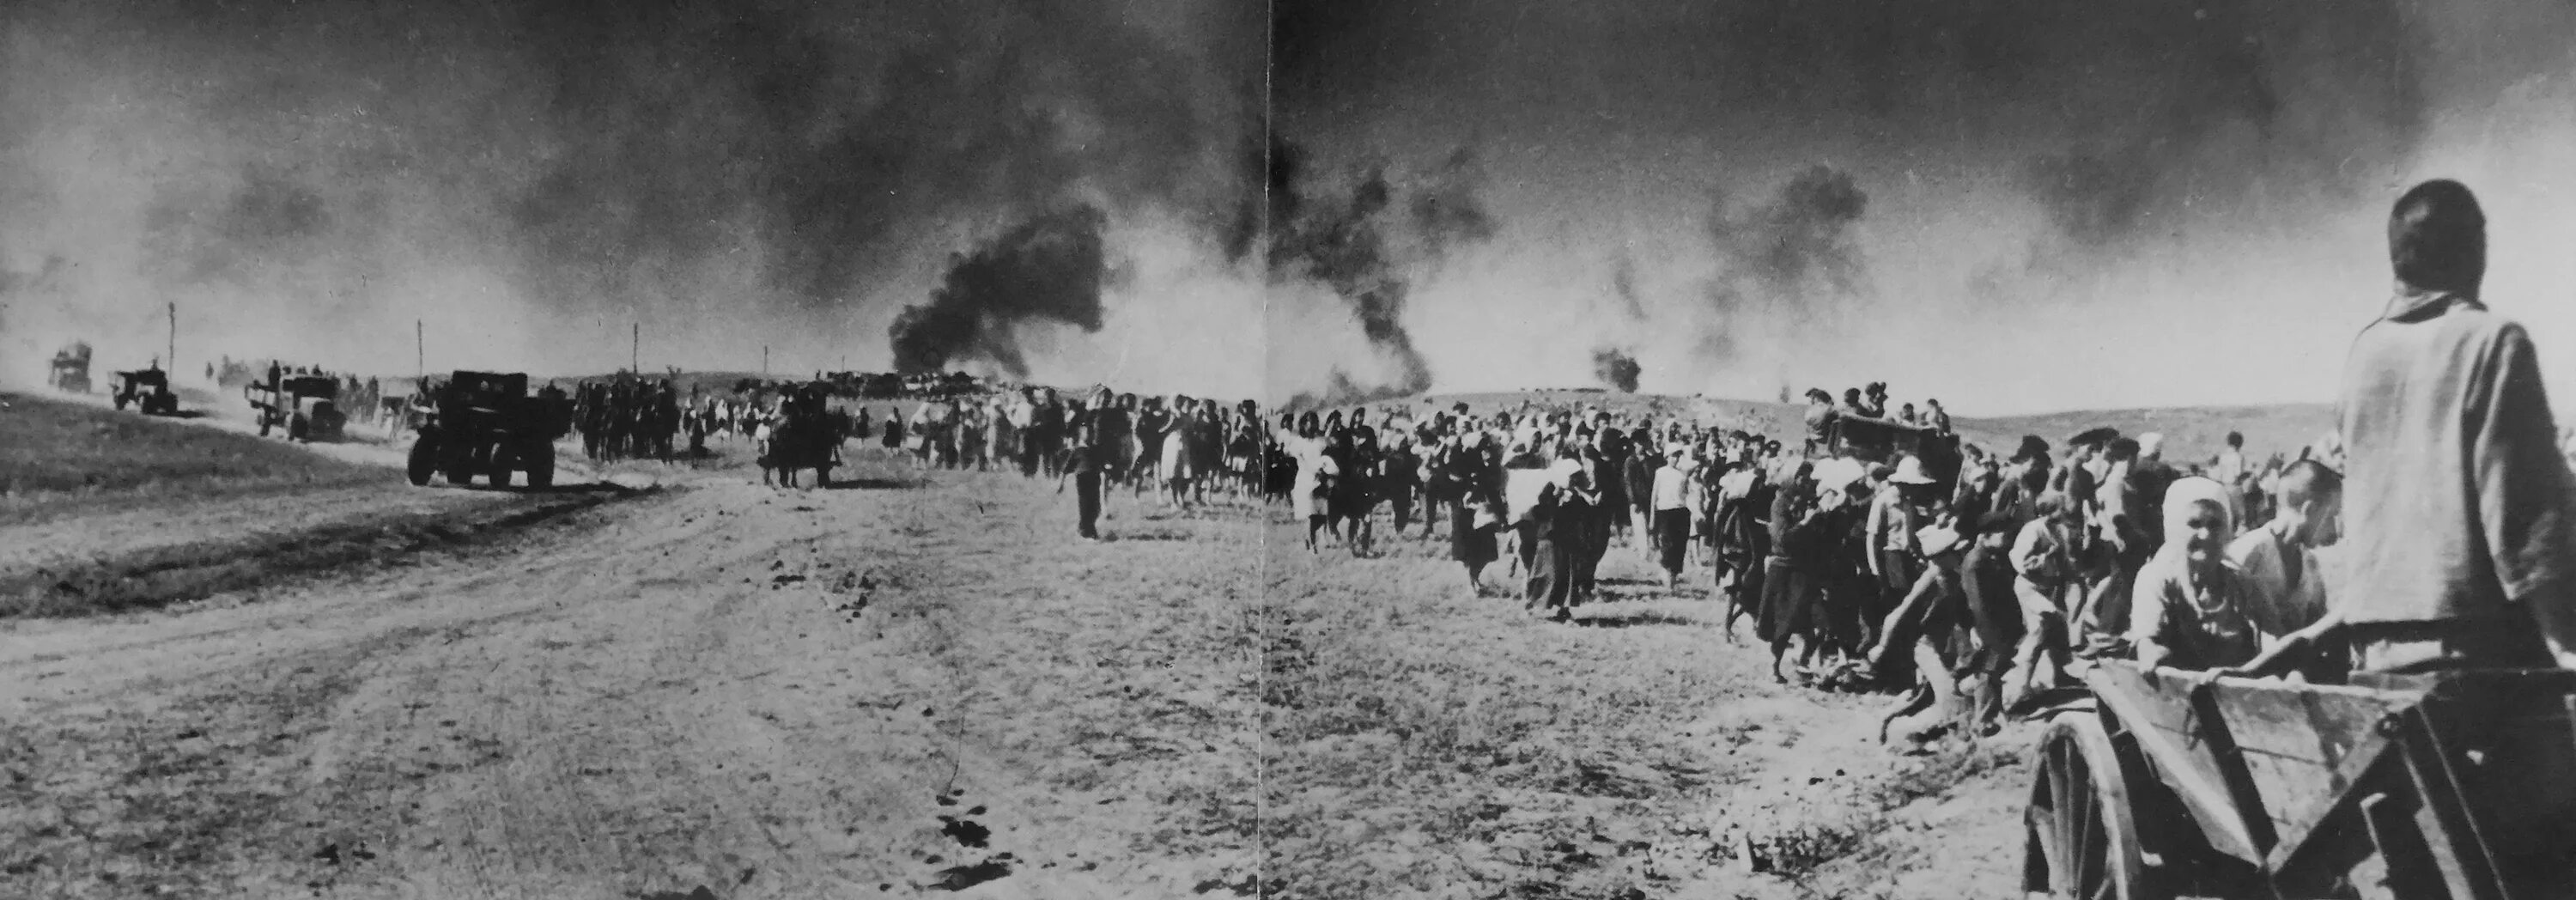 Беженцы в годы ВОВ 1941-1945г.г. Беженцы в первые дни войны 1941-1945. 22 июня июль 1941 г